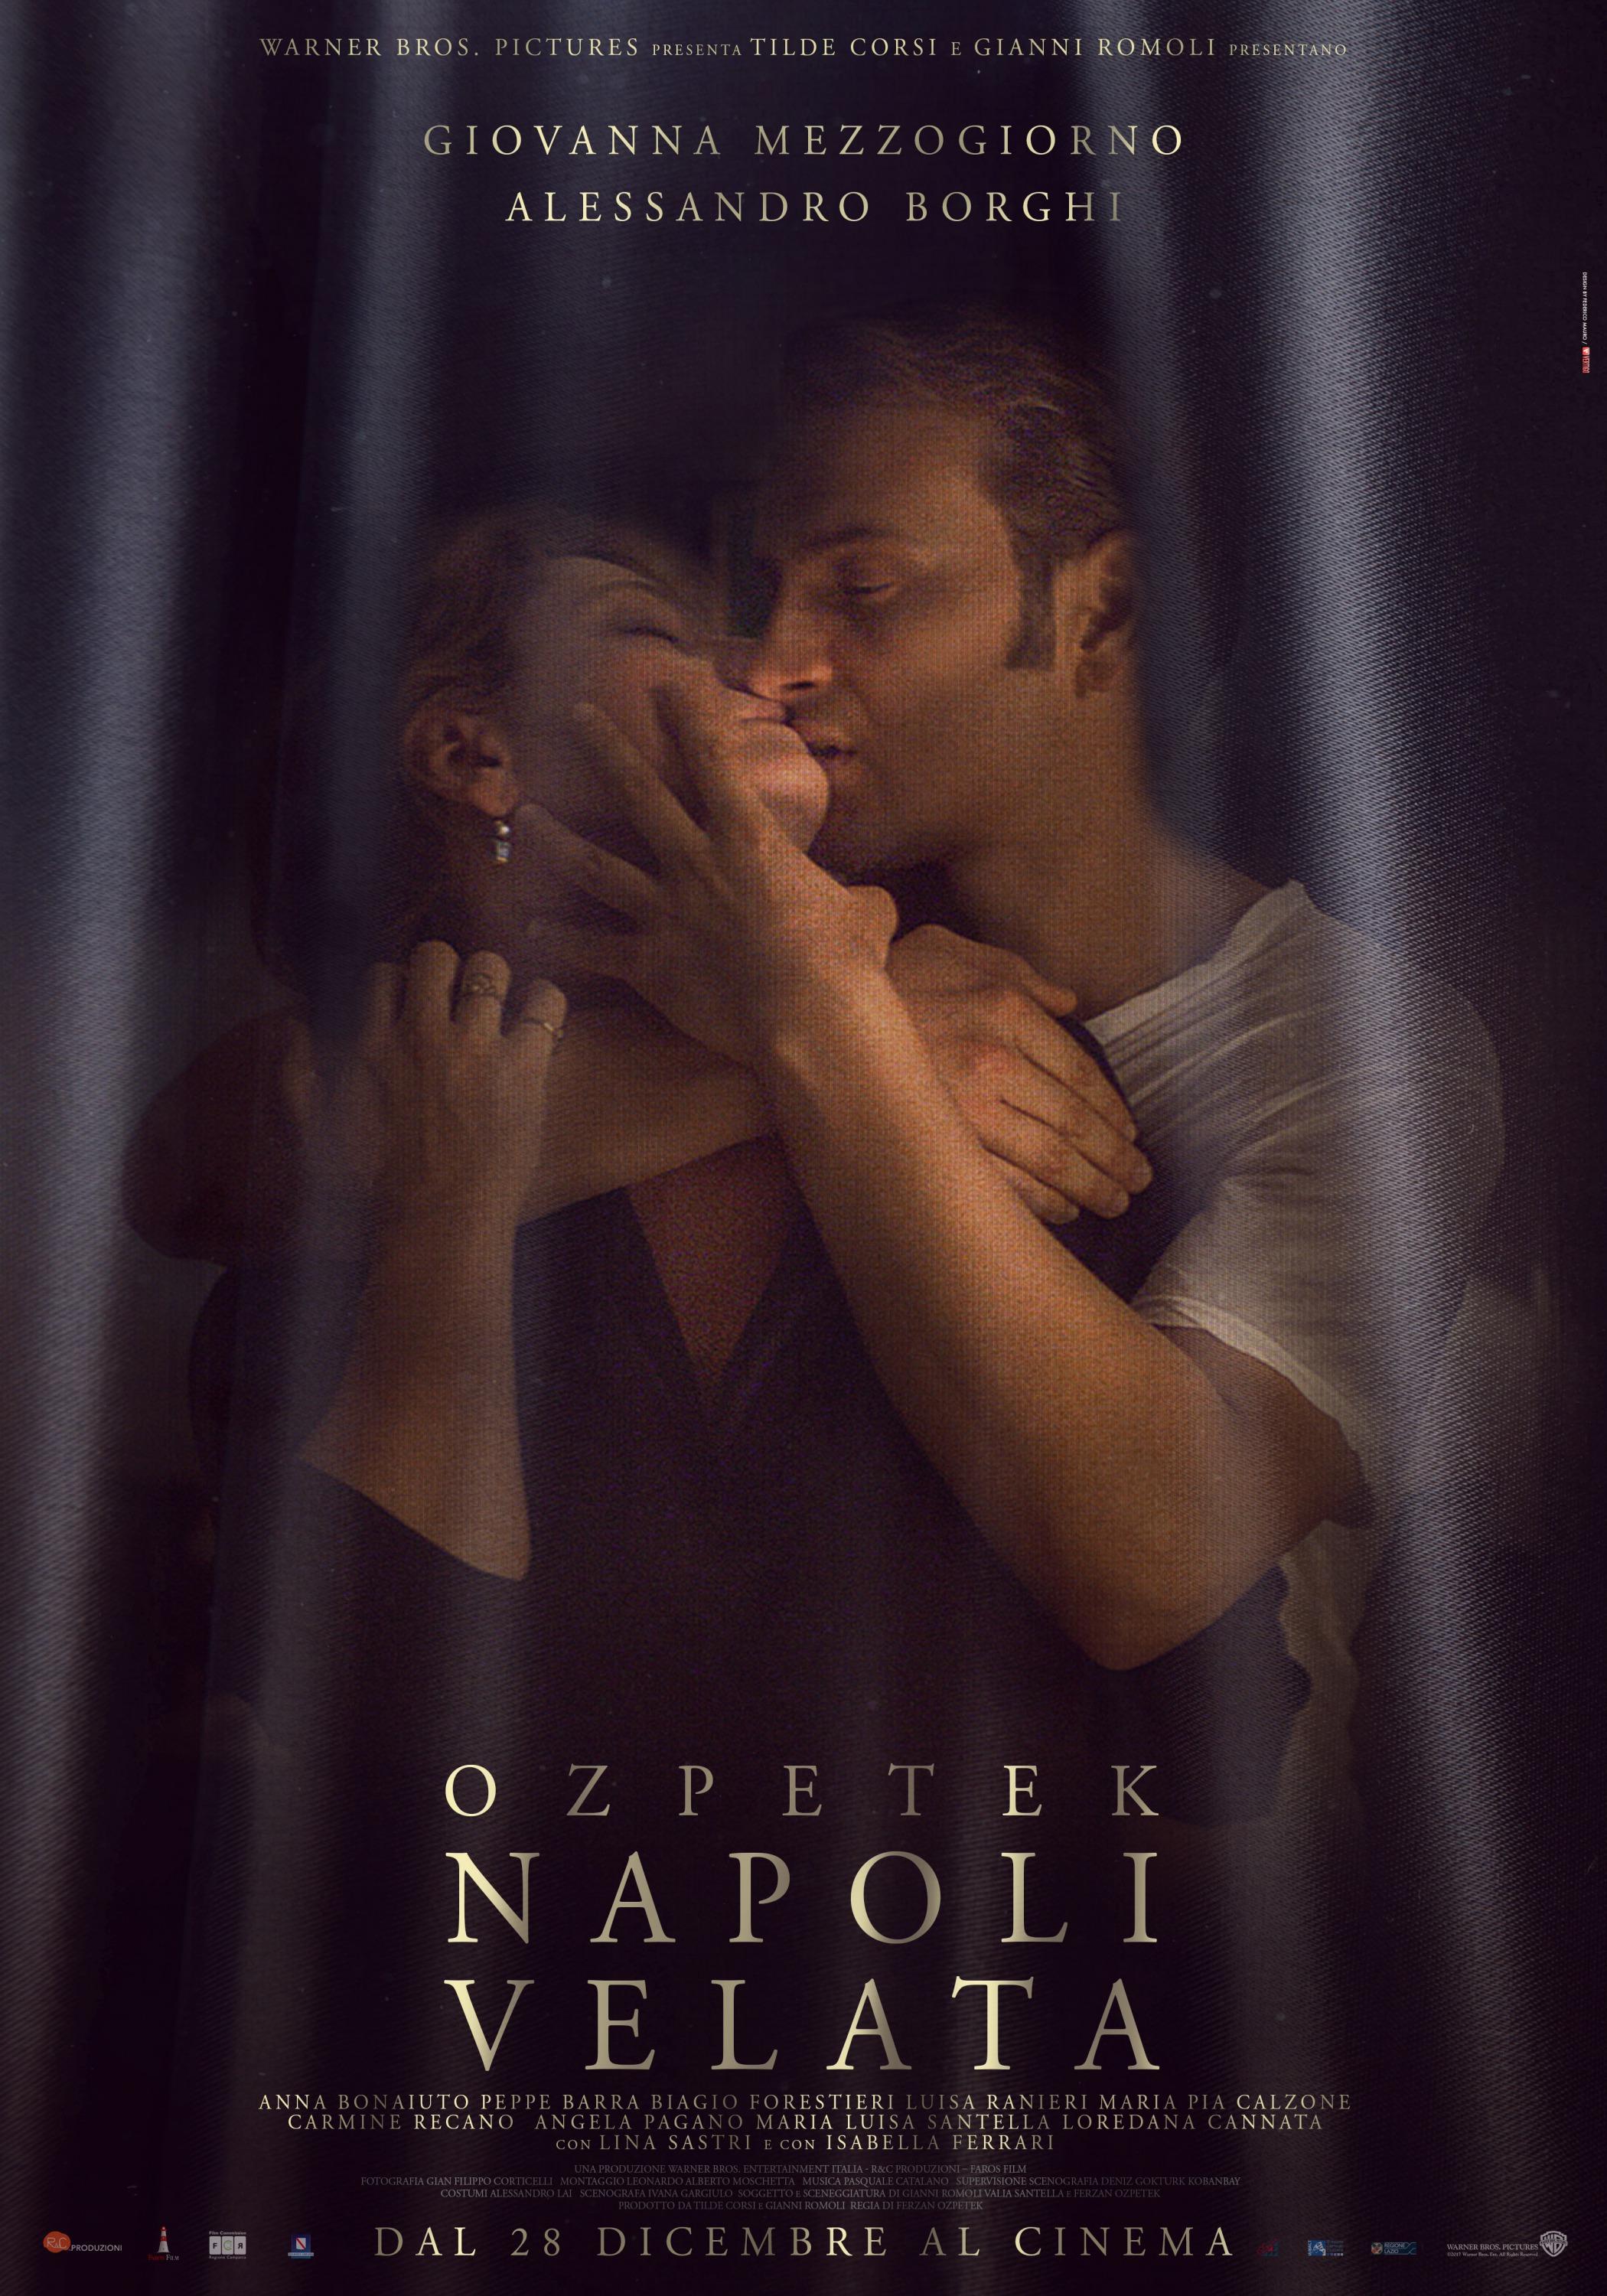 Постер фильма Неаполь под пеленой | Napoli velata 